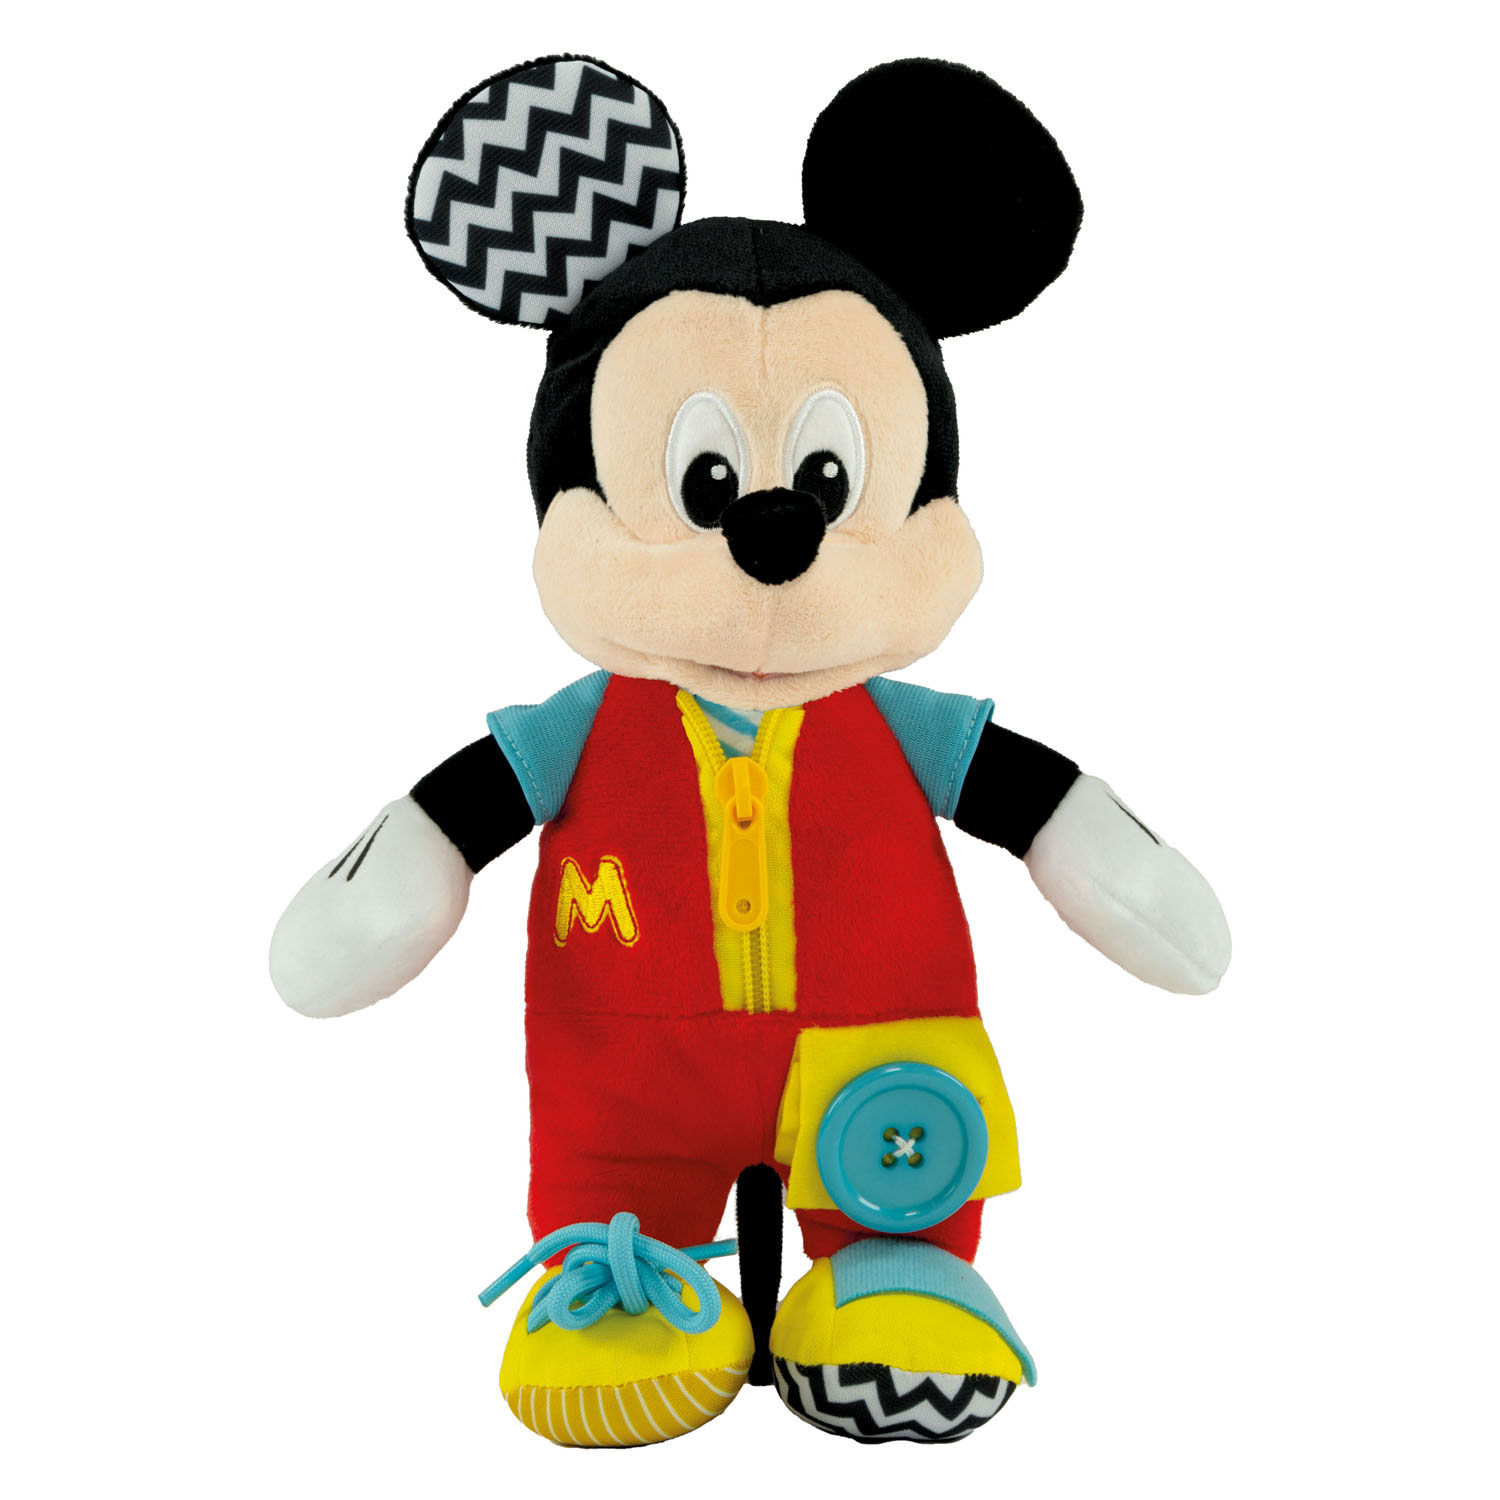 Doudou Minnie Mouse 24 cm